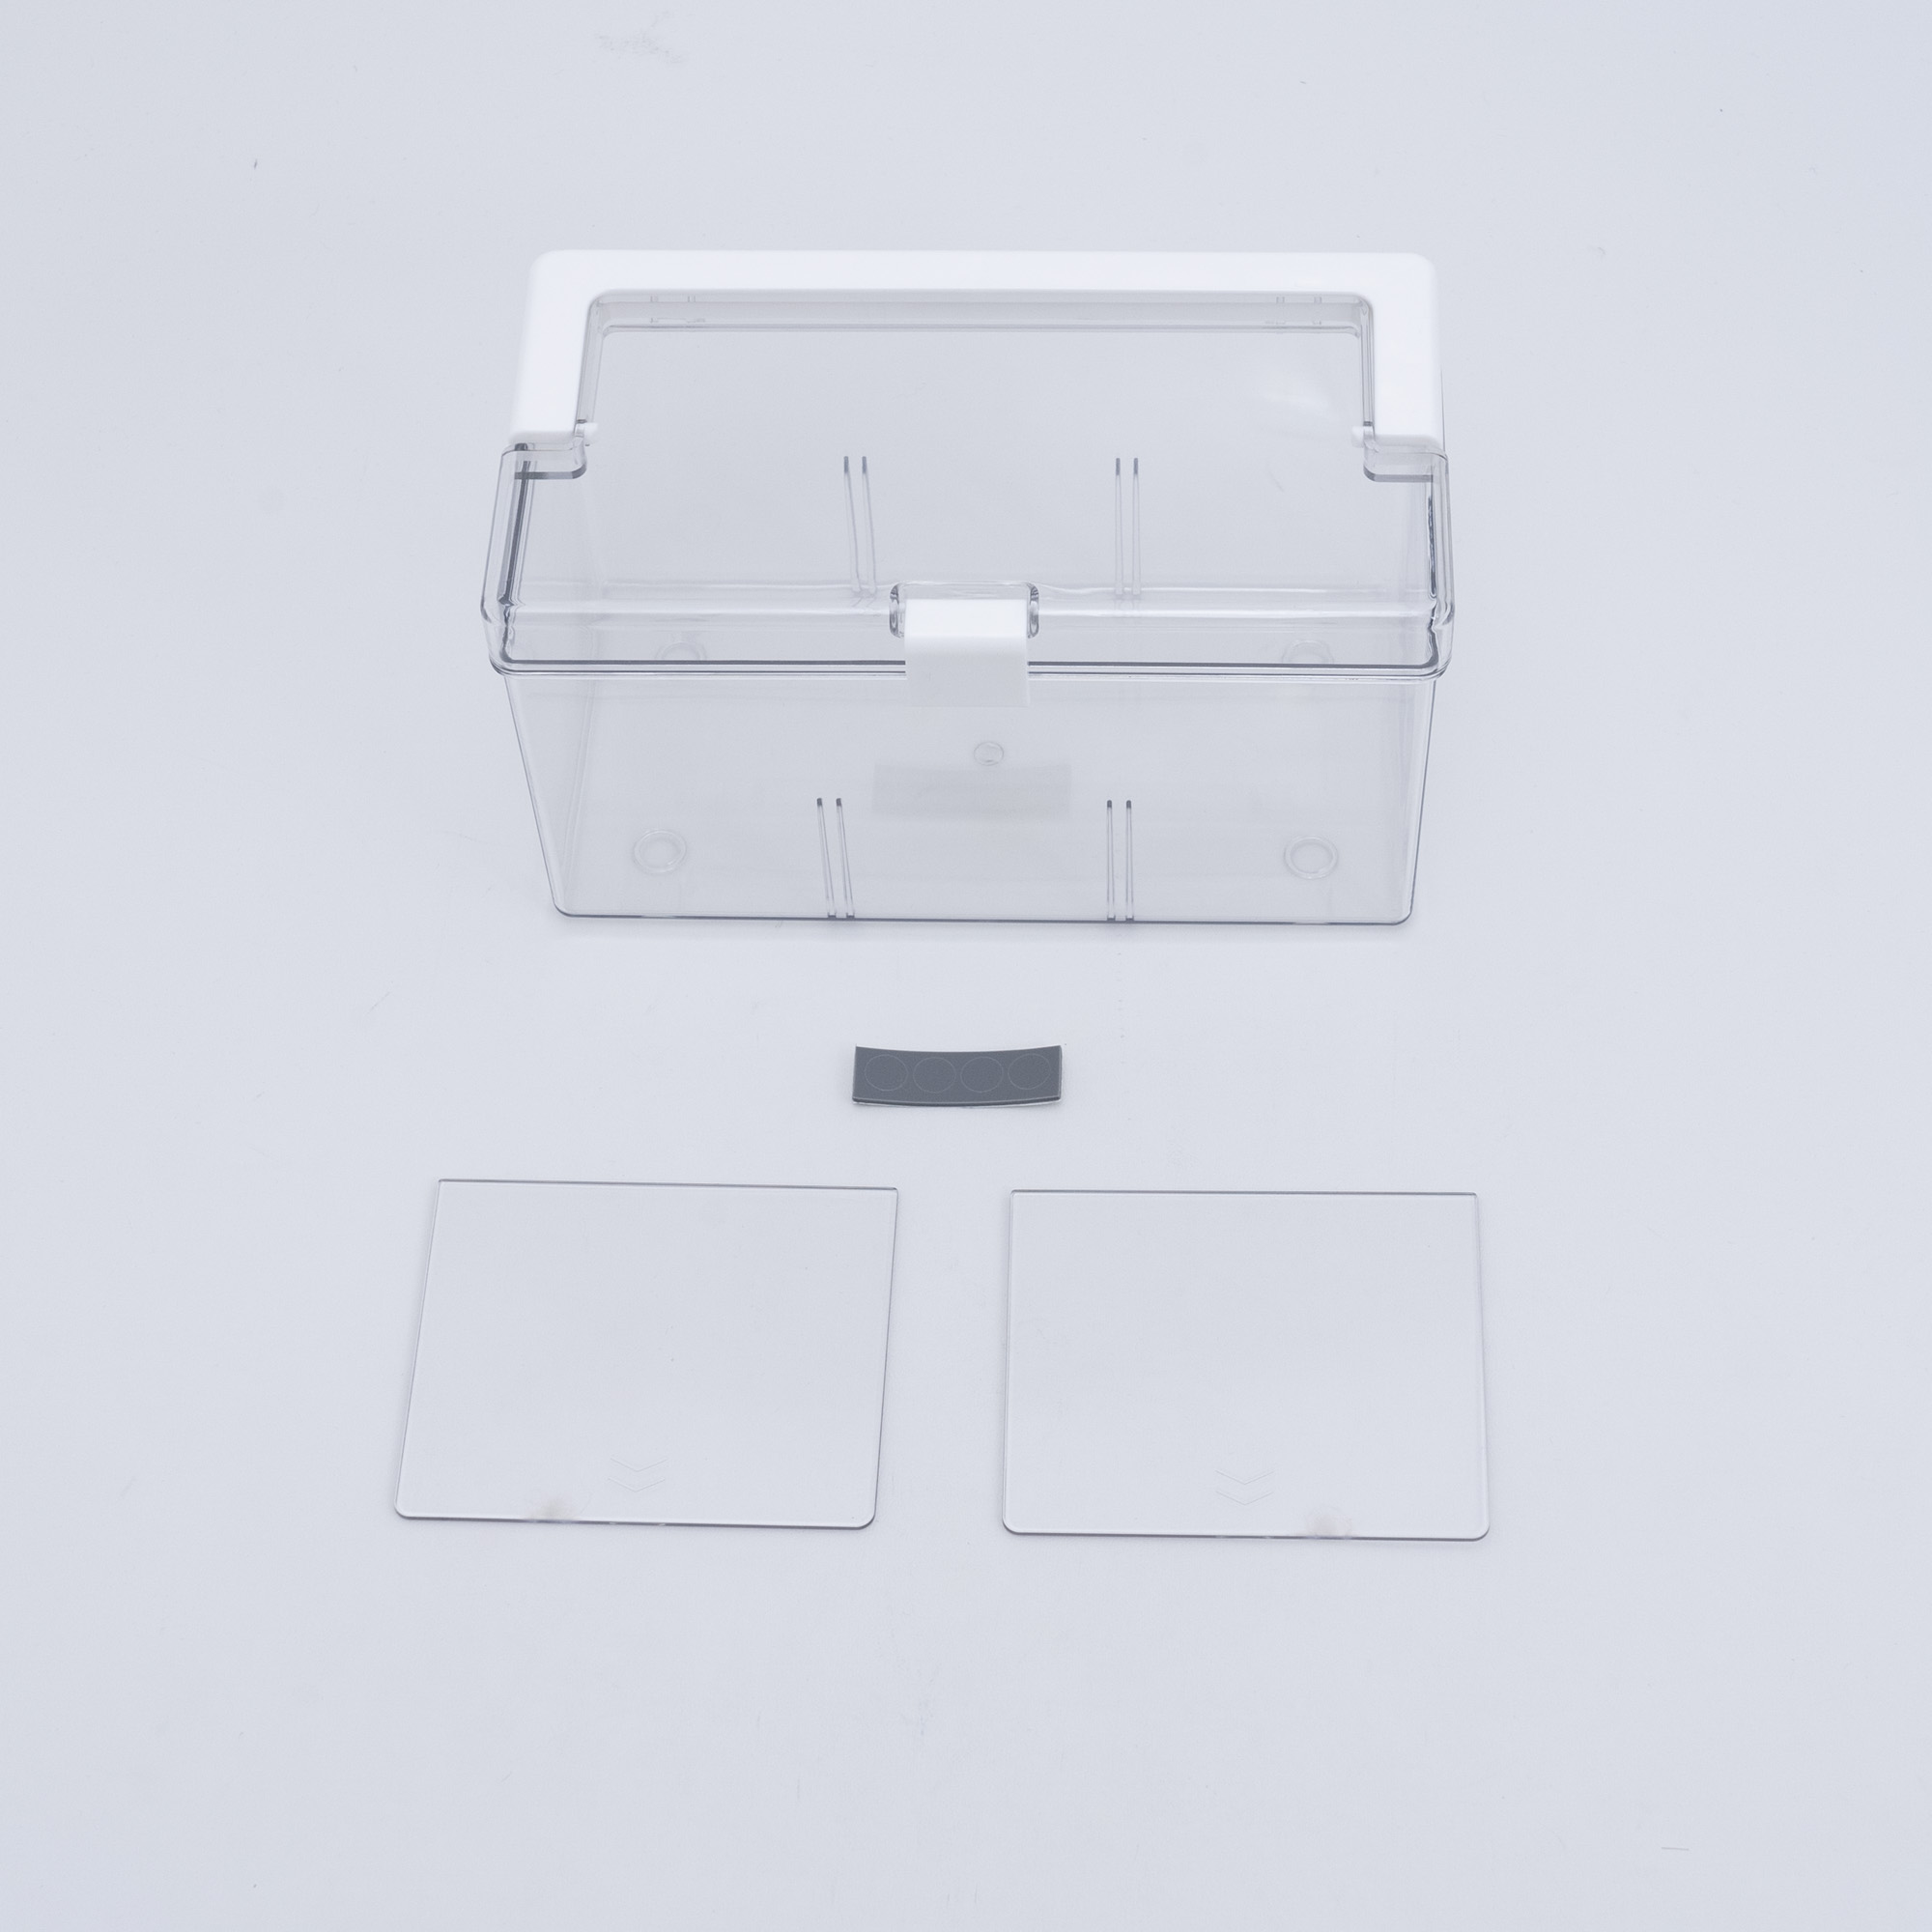 透明ピルボックス|大きすぎない小容量のピルボックス!高透明な素材で視界を邪魔しない！|undefined